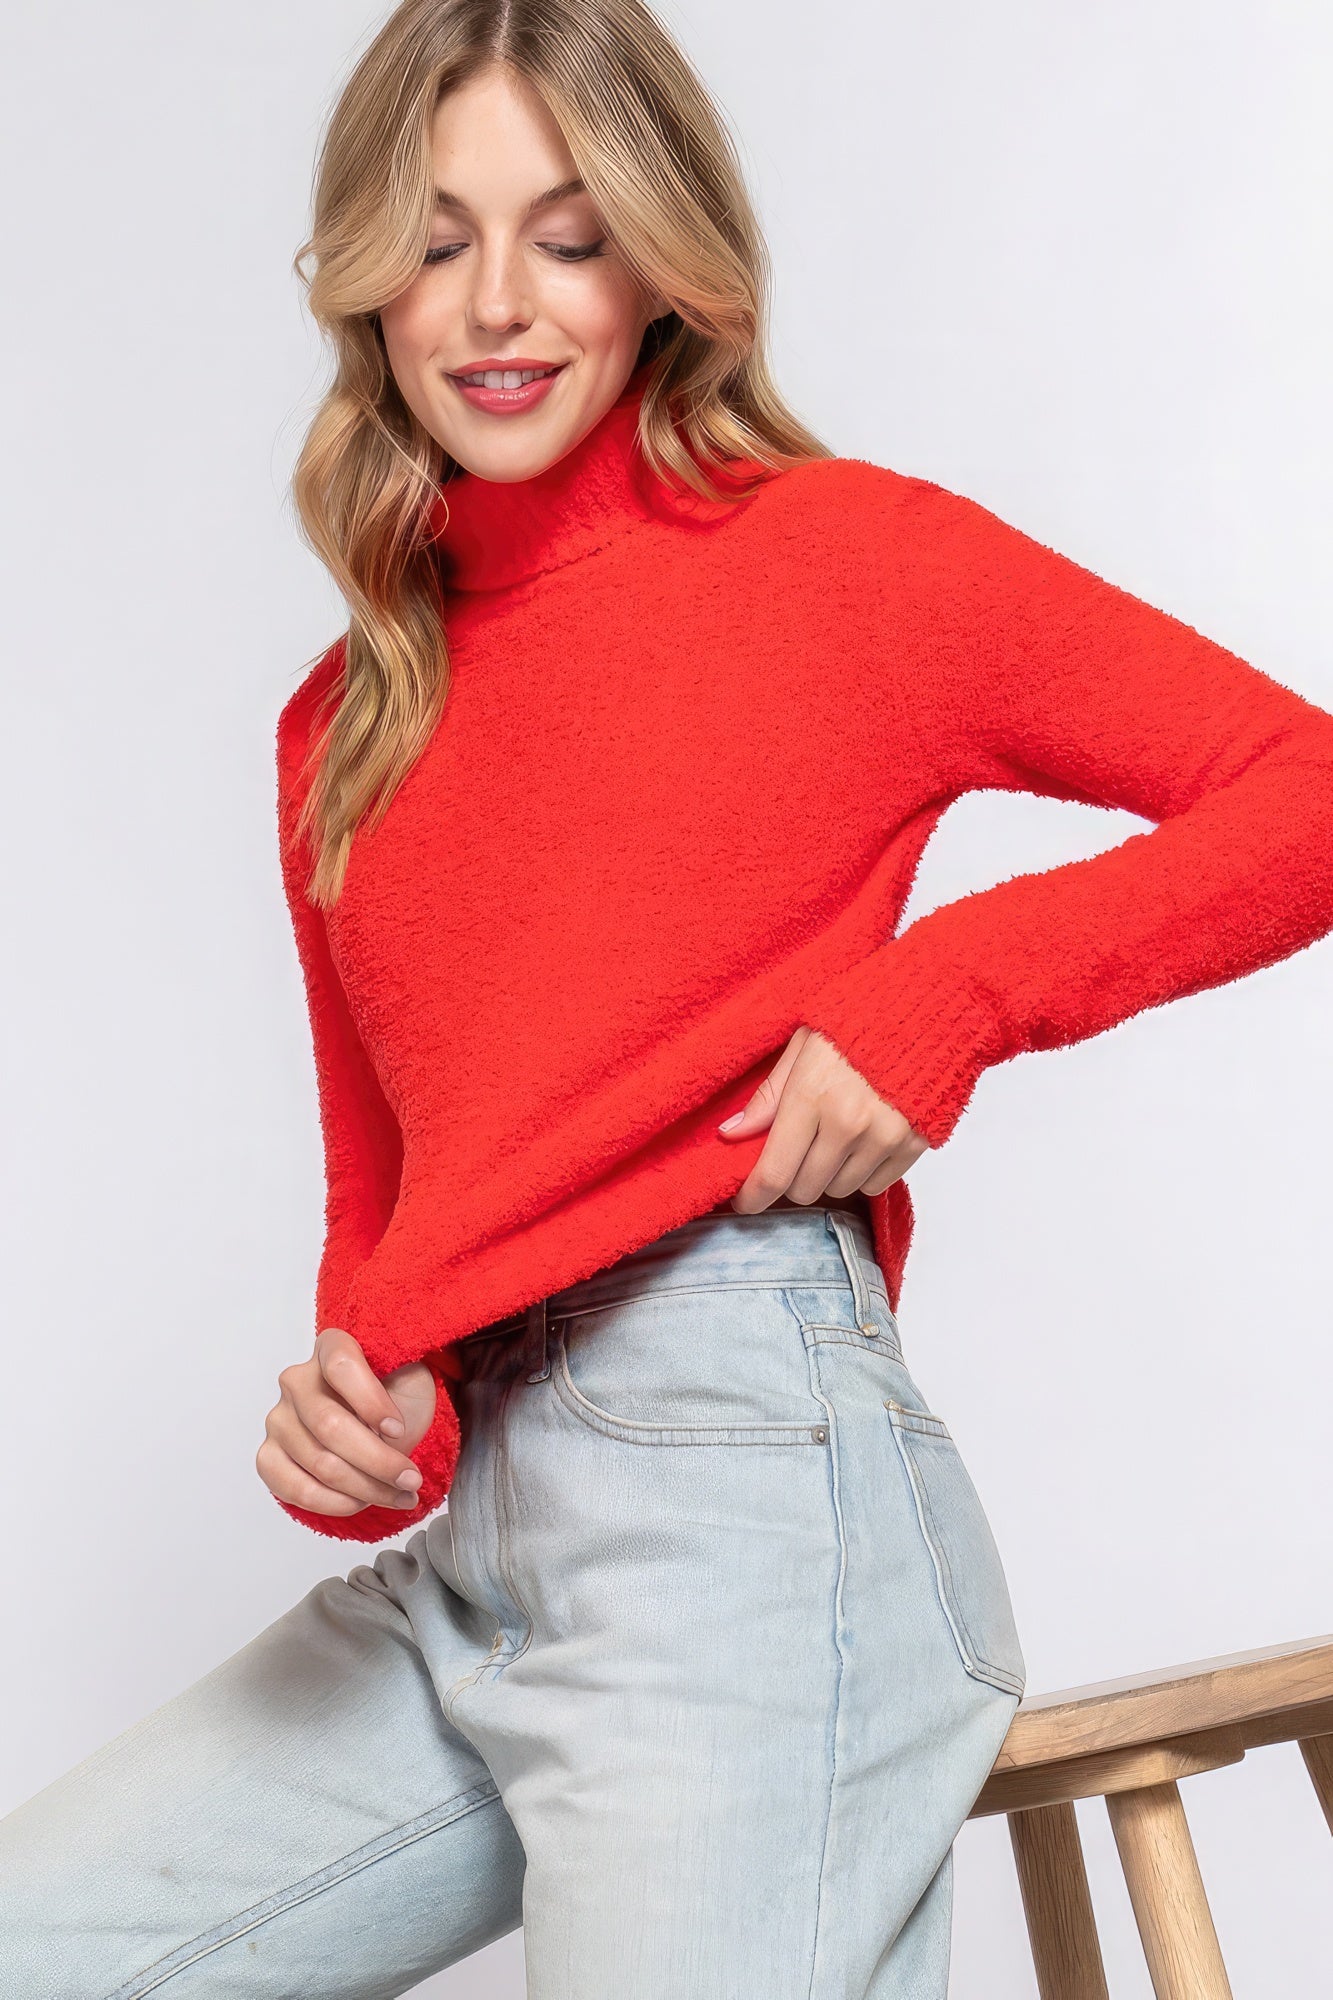 Women's Turtleneck Sweater Top